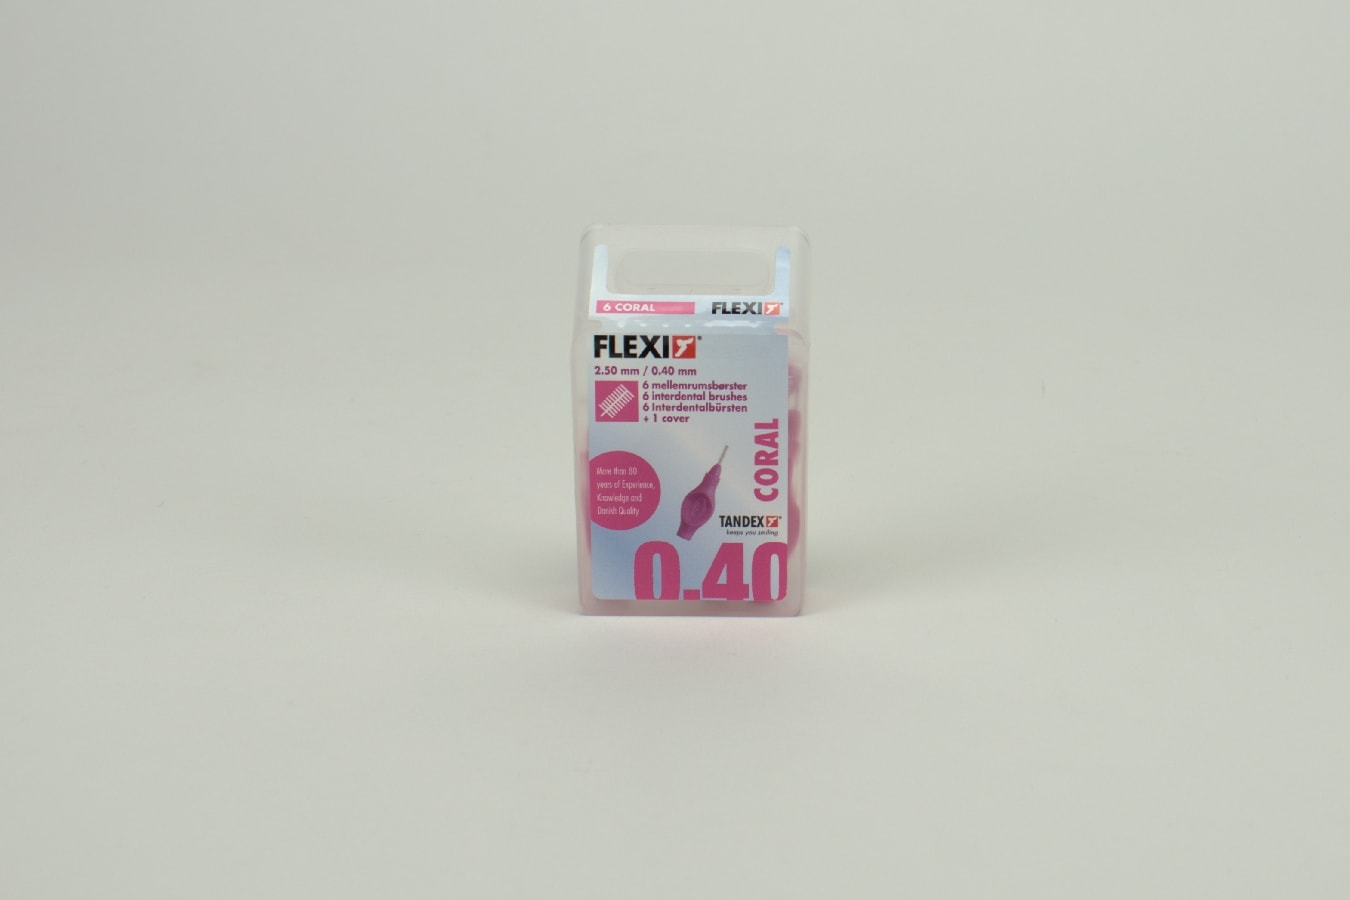 Mellanrumsborste FLEXI rosa 0,40mm 6st